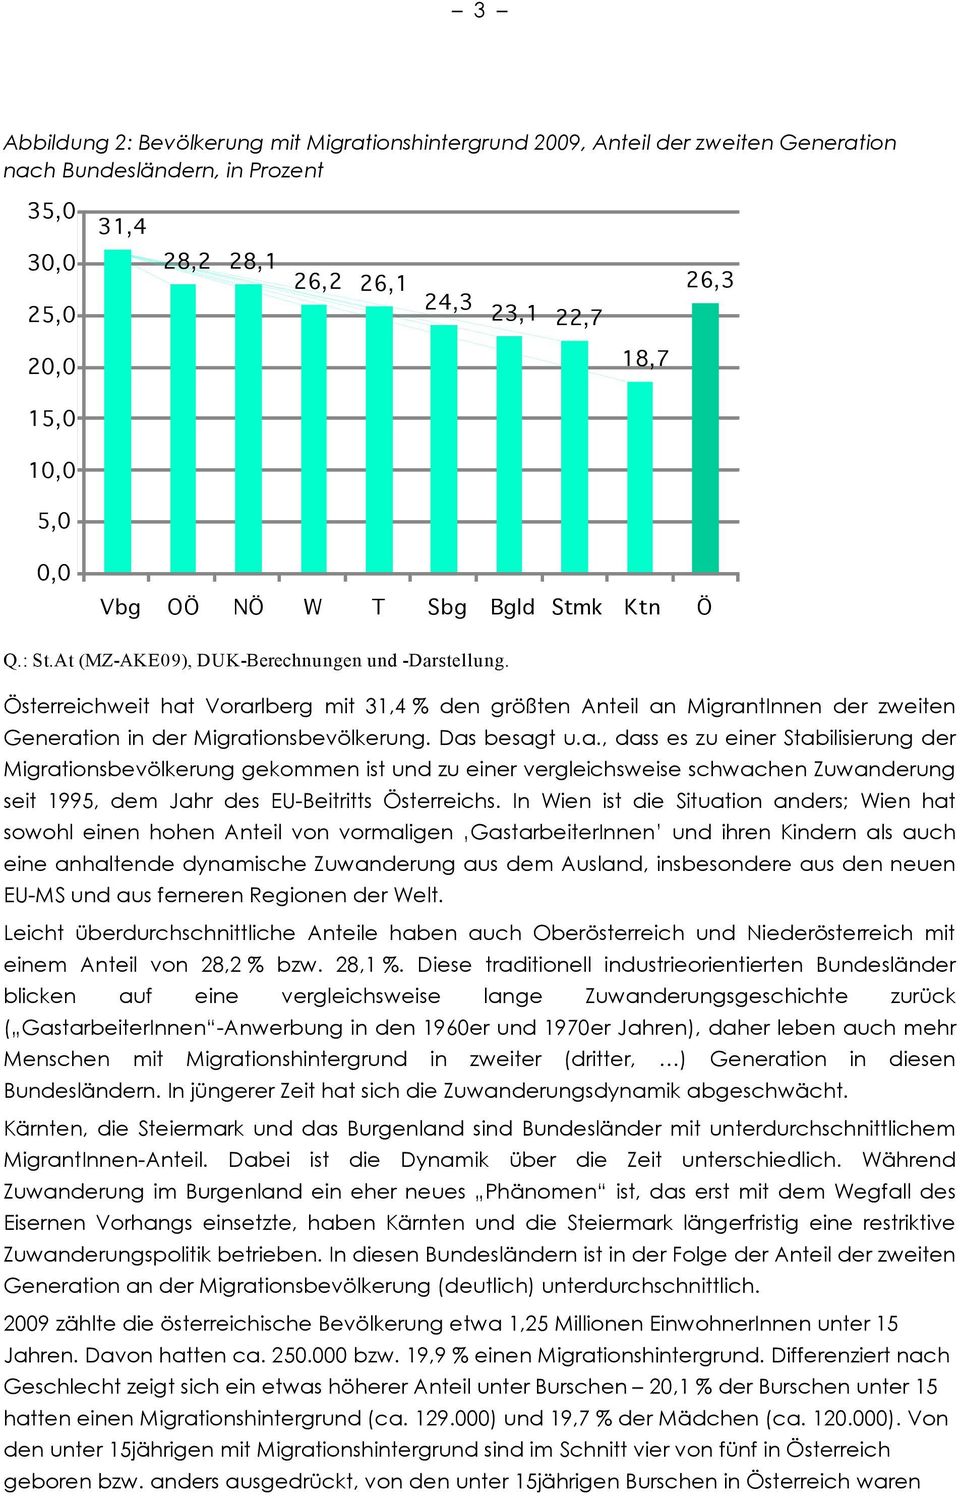 Österreichweit hat Vorarlberg mit 31,4 % den größten Anteil an MigrantInnen der zweiten Generation in der Migrationsbevölkerung. Das besagt u.a., dass es zu einer Stabilisierung der Migrationsbevölkerung gekommen ist und zu einer vergleichsweise schwachen Zuwanderung seit 1995, dem Jahr des EU-Beitritts Österreichs.